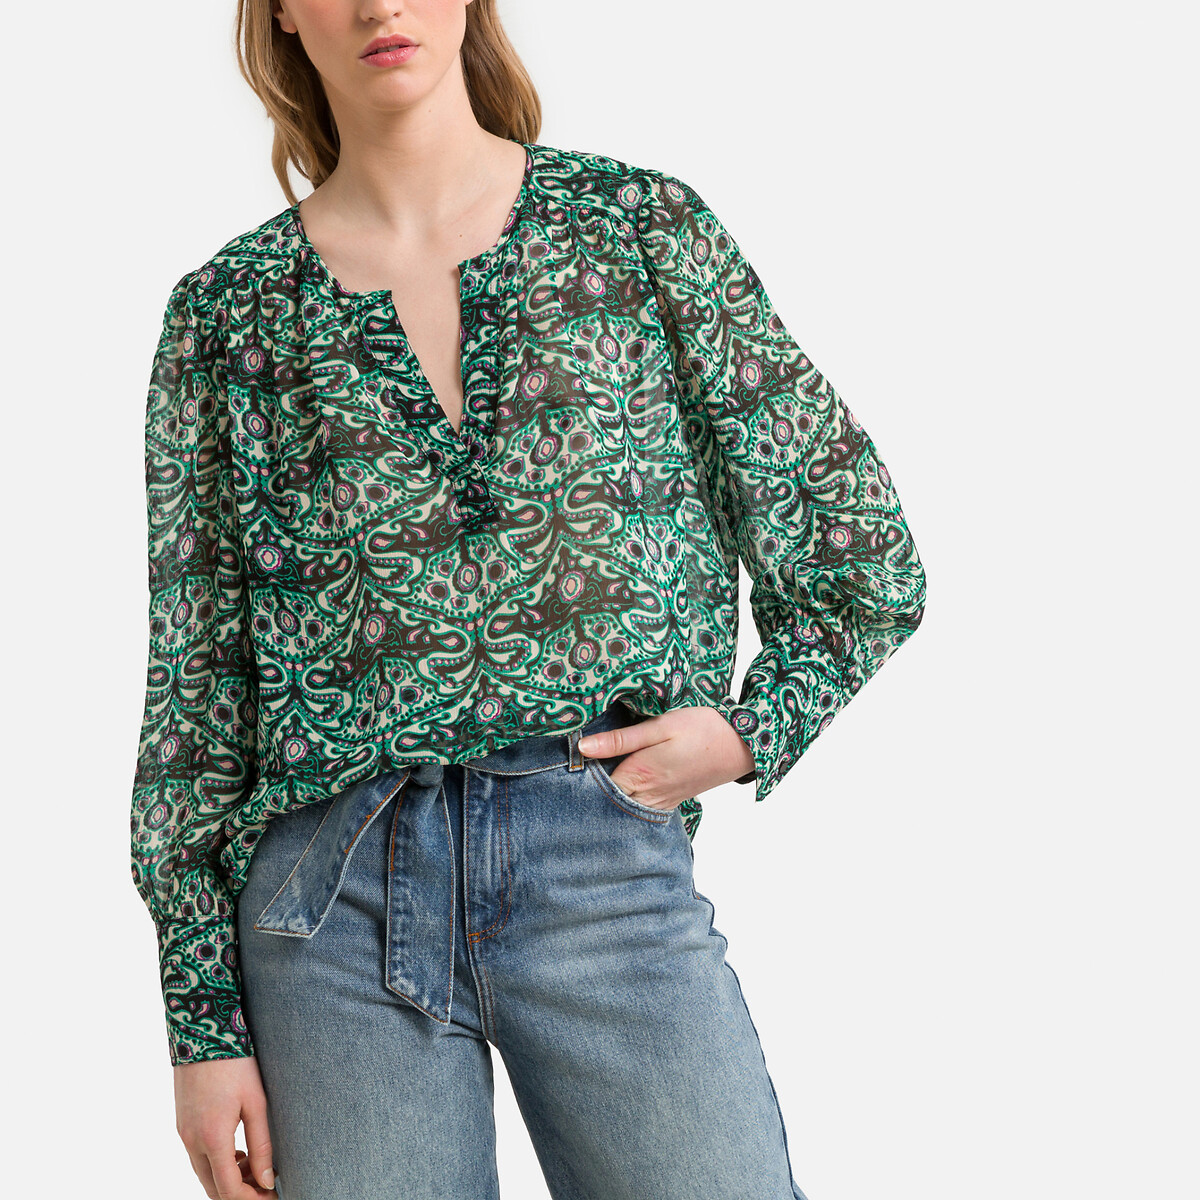 Блузка с принтом и длинными рукавами 2(M) зеленый женская блузка с открытыми плечами летняя ажурная рубашка с v образным вырезом топ в стиле харадзюку блузка клубничного цвета 2021